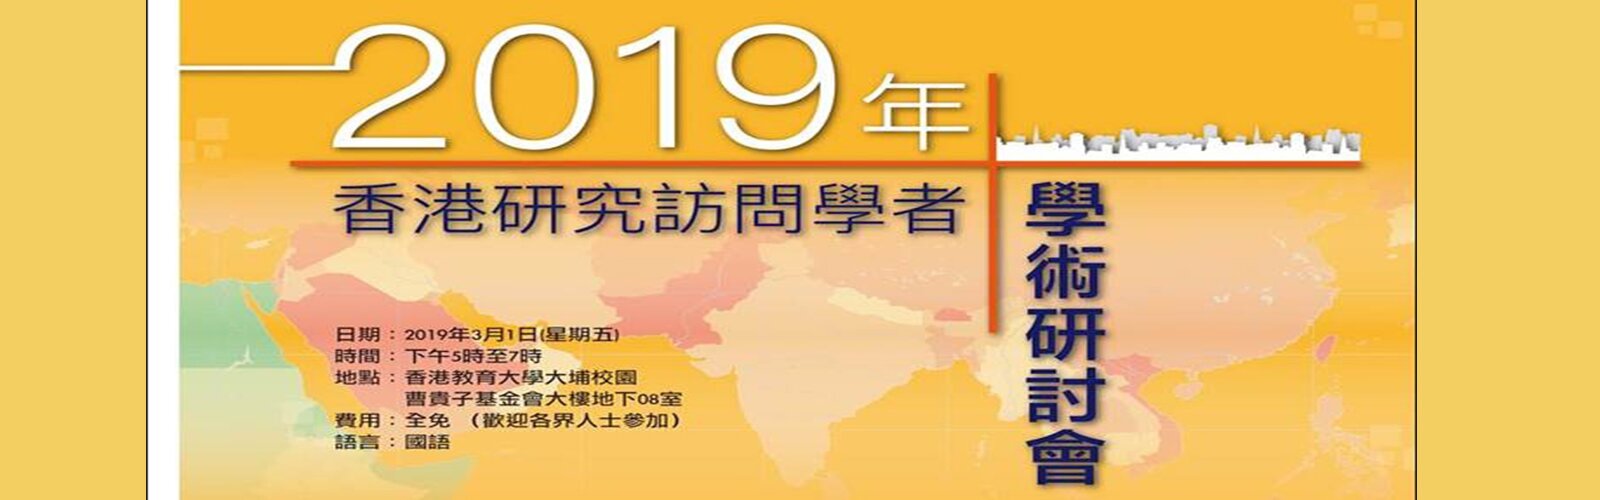 2019年香港研究訪問學者學術研討會